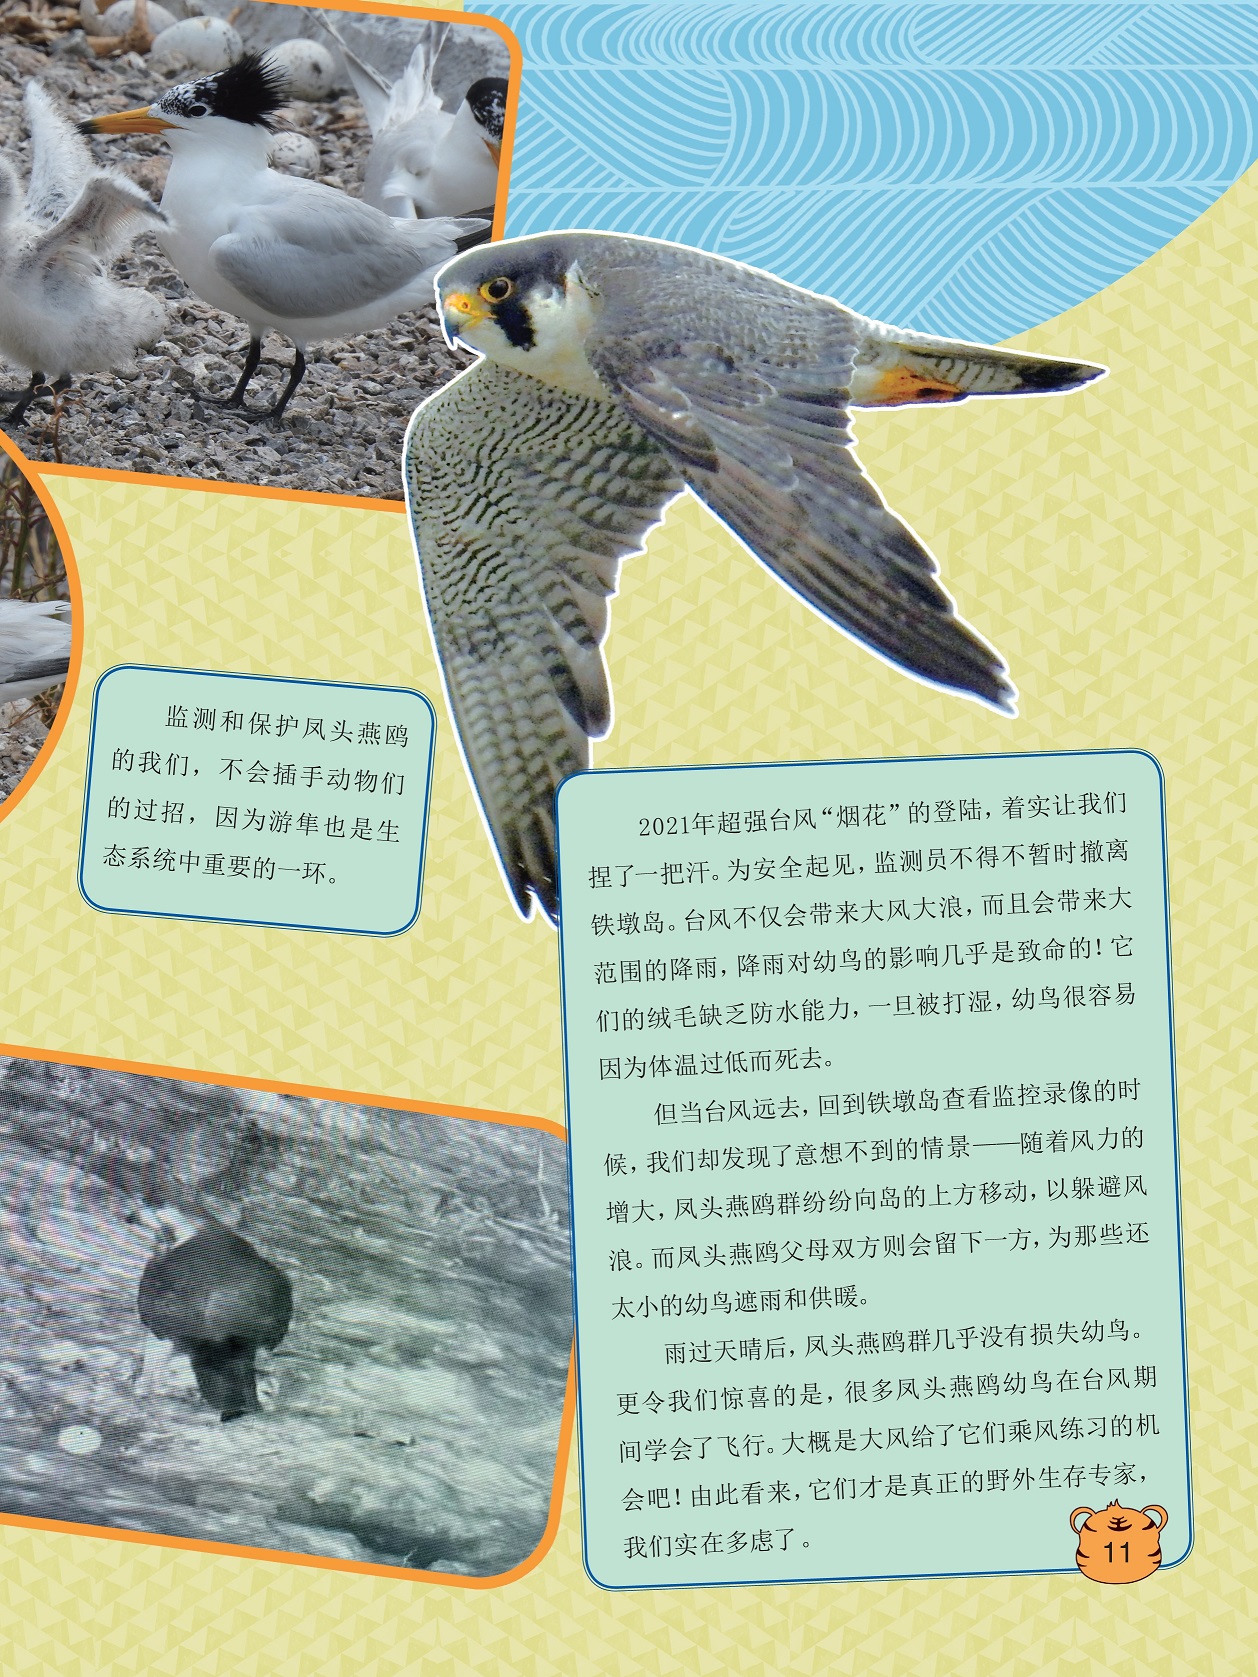 监测和保护凤头燕鸥,凤头燕鸥幼鸟在台风期间学会了飞行